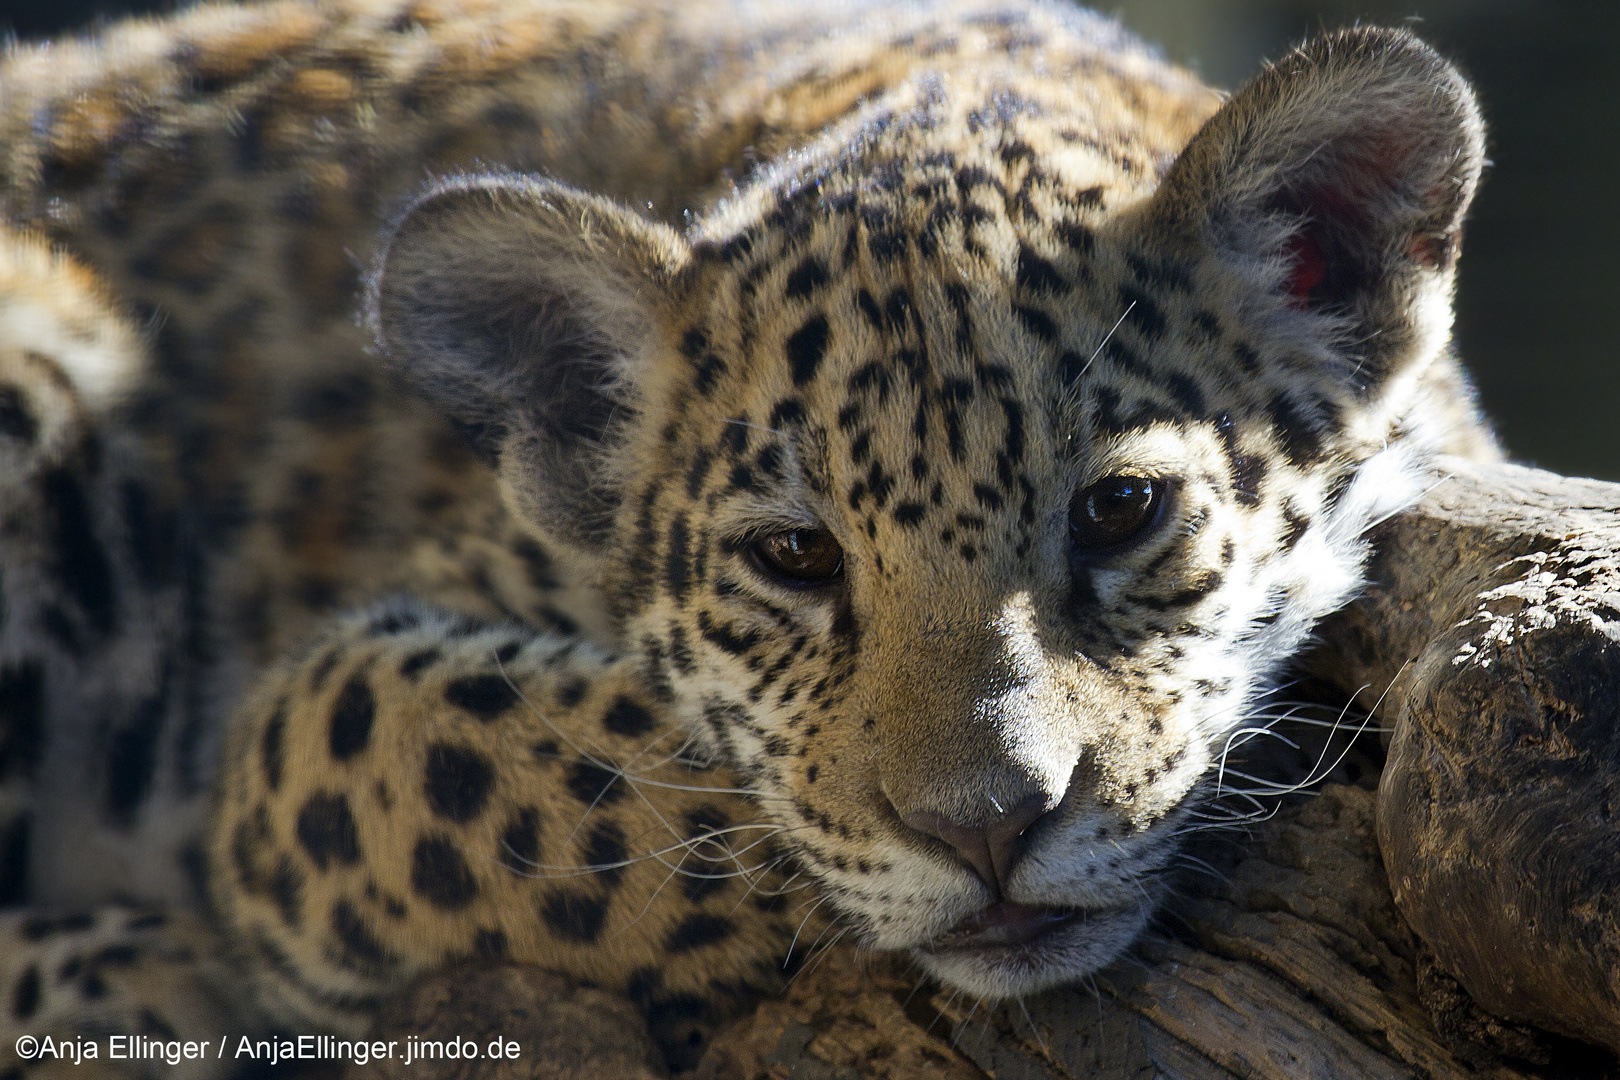 Cute little Leopard